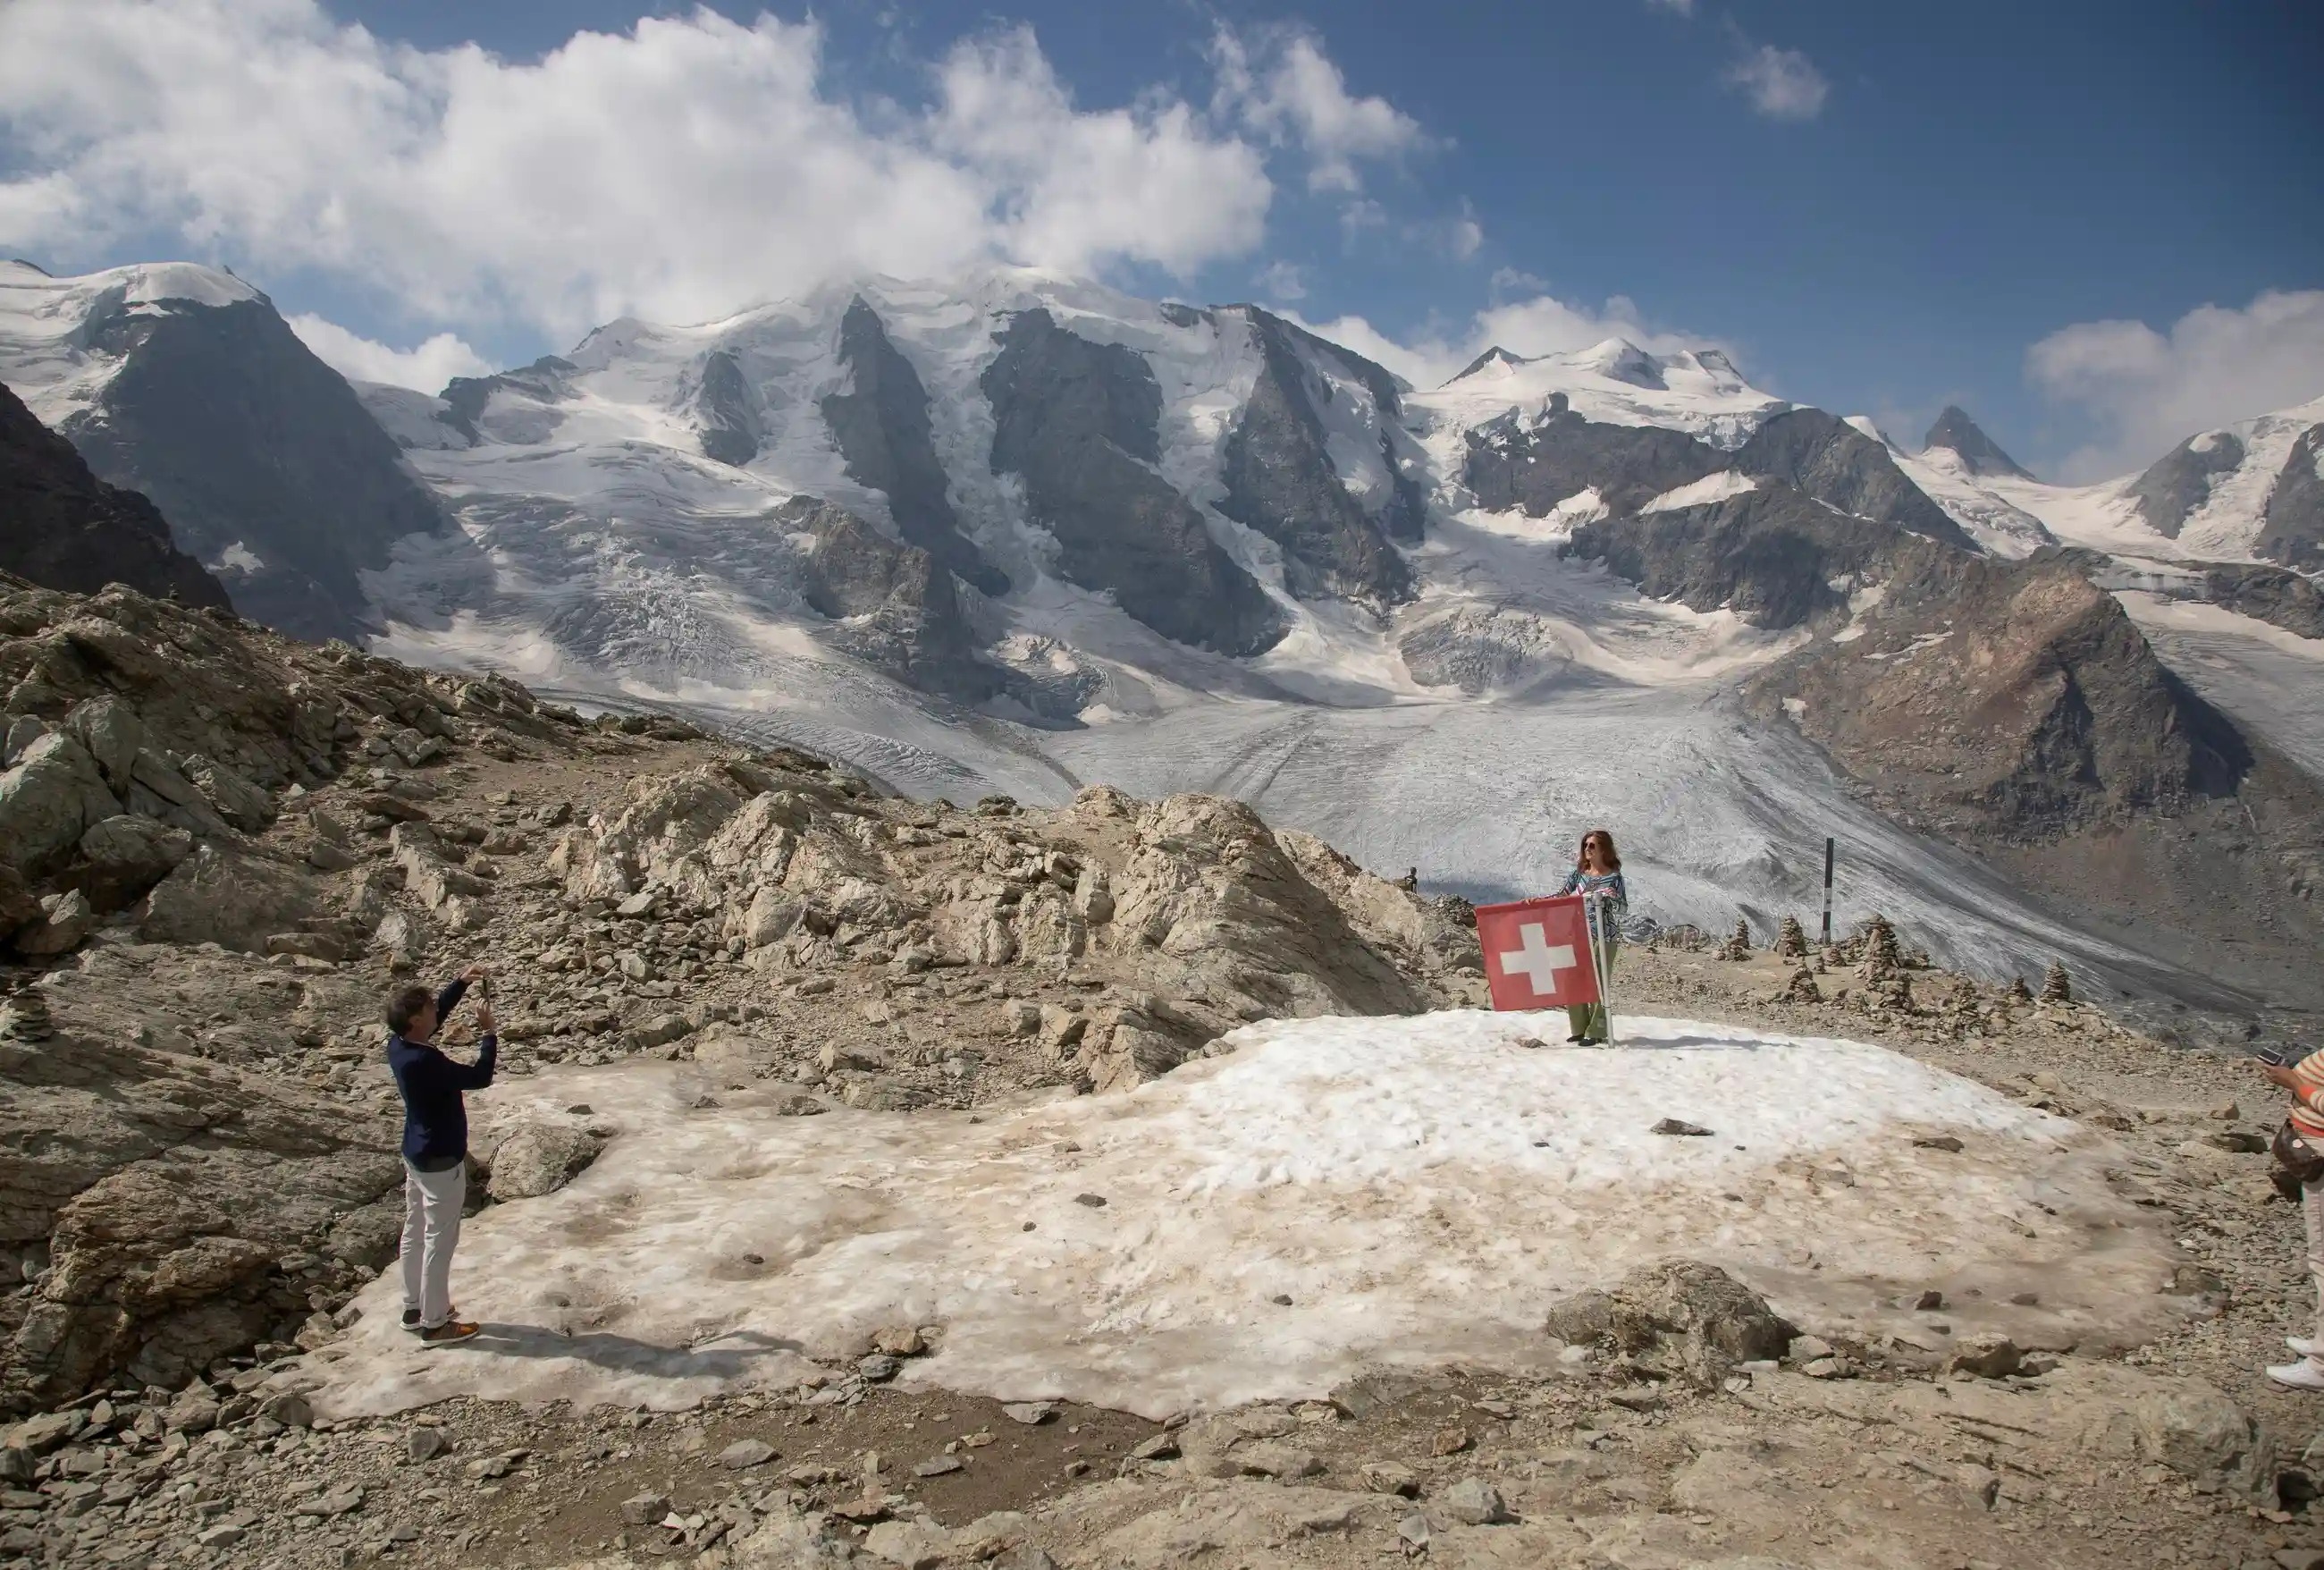 Băng trên đỉnh Alps biến mất, nhiều hài cốt người và xác máy bay lộ ra - ảnh 4